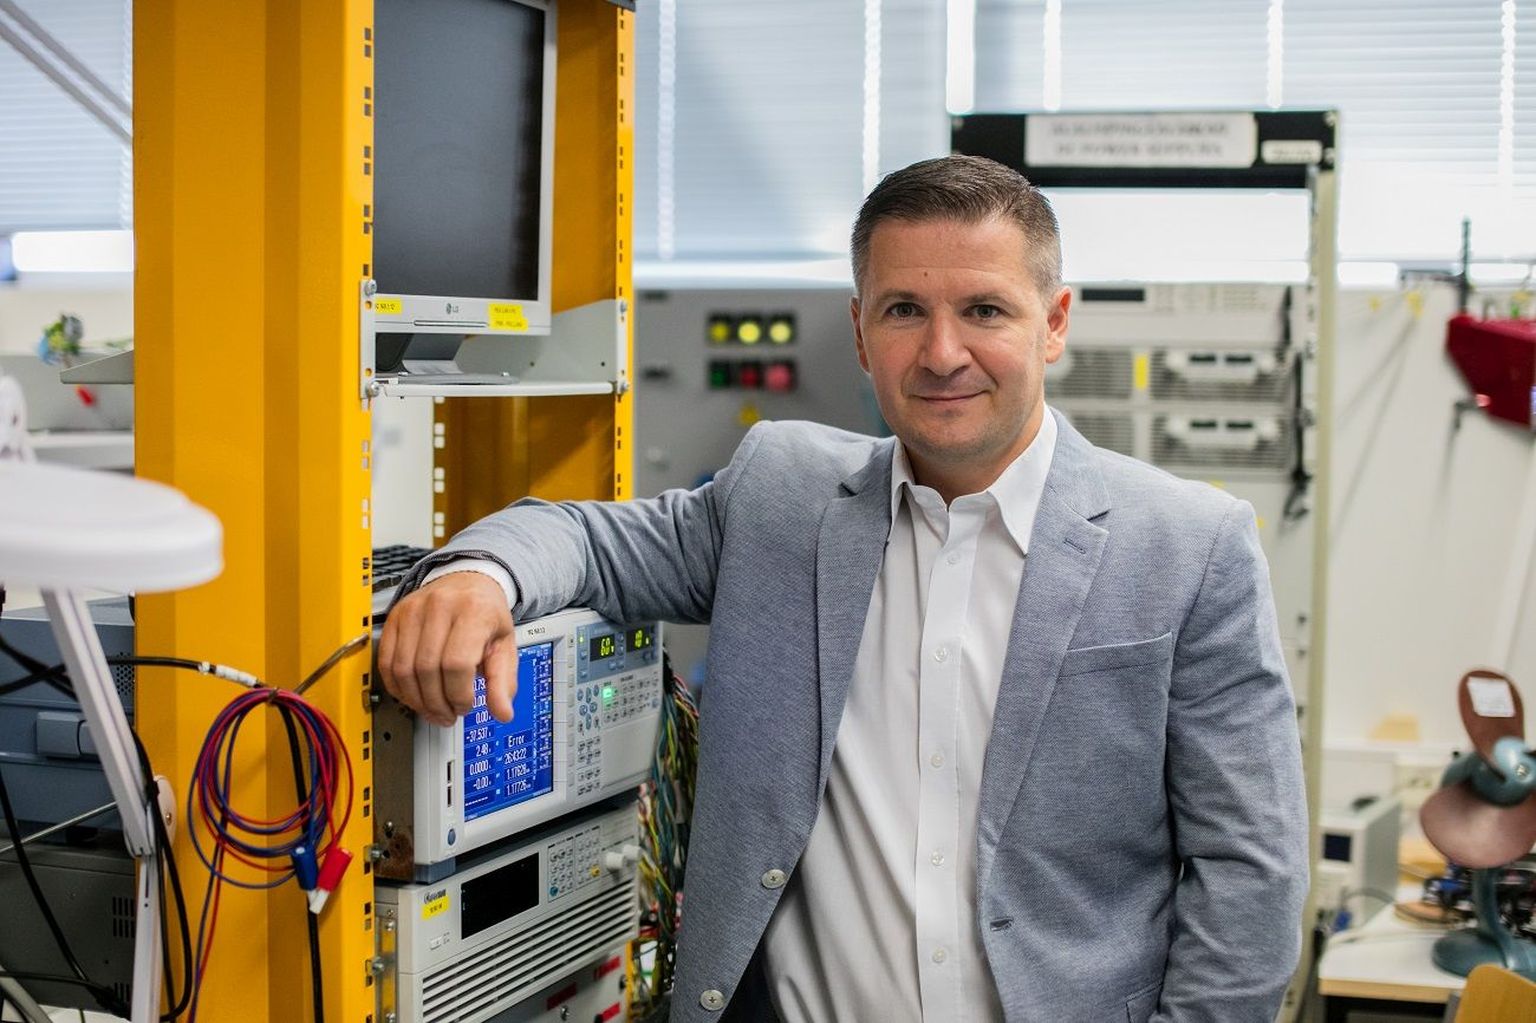 Tallinna Tehnikaülikooli aasta teadlaseks valitud Dmitri Vinnikov uurib jõuelektroonika lahendusi, mis aitavad energiavarustust töökindlamaks ja säästlikumaks muuta.